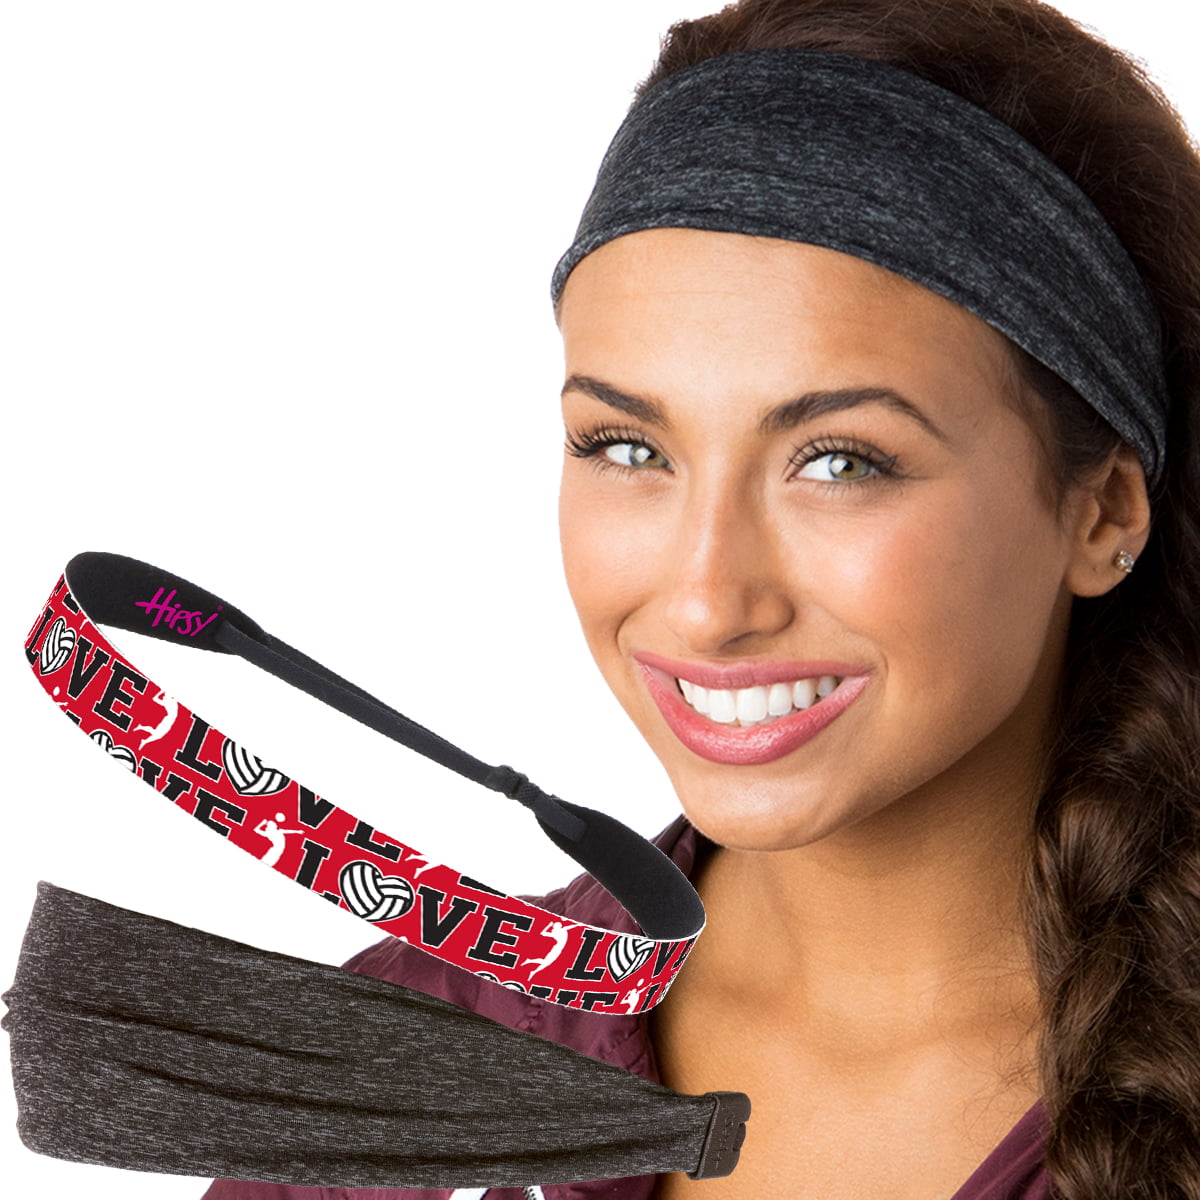 Hipsy Adjustable NO SLIP Cute Sports RUNNING Headbands for Women & Girls 5 Pack 